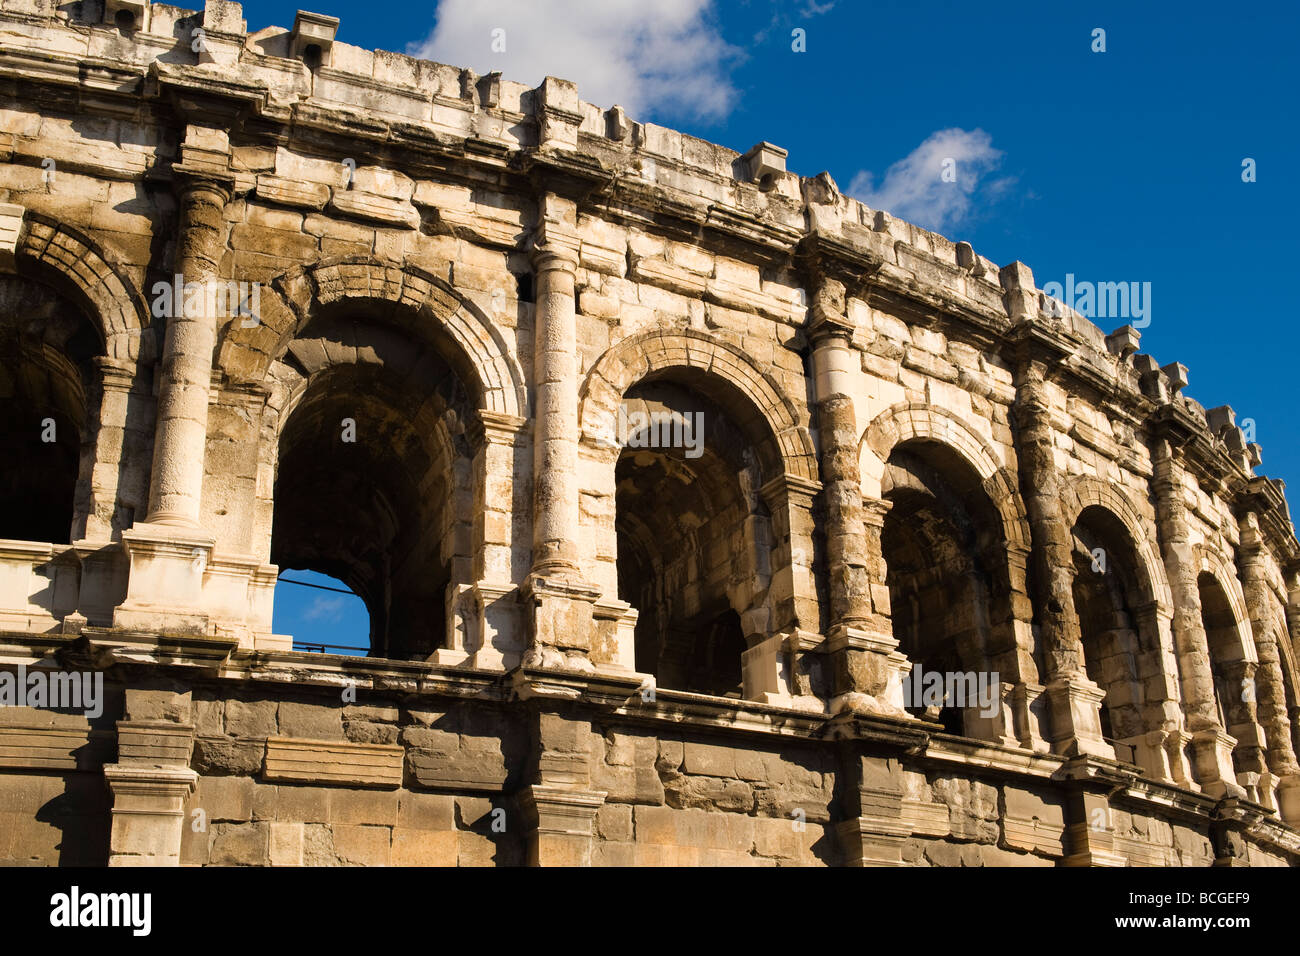 Les Arènes de Nîmes, einem römischen Amphitheater, in der Stadt Nimes, Südfrankreich. Jetzt für Stierkämpfe verwendet. Stockfoto